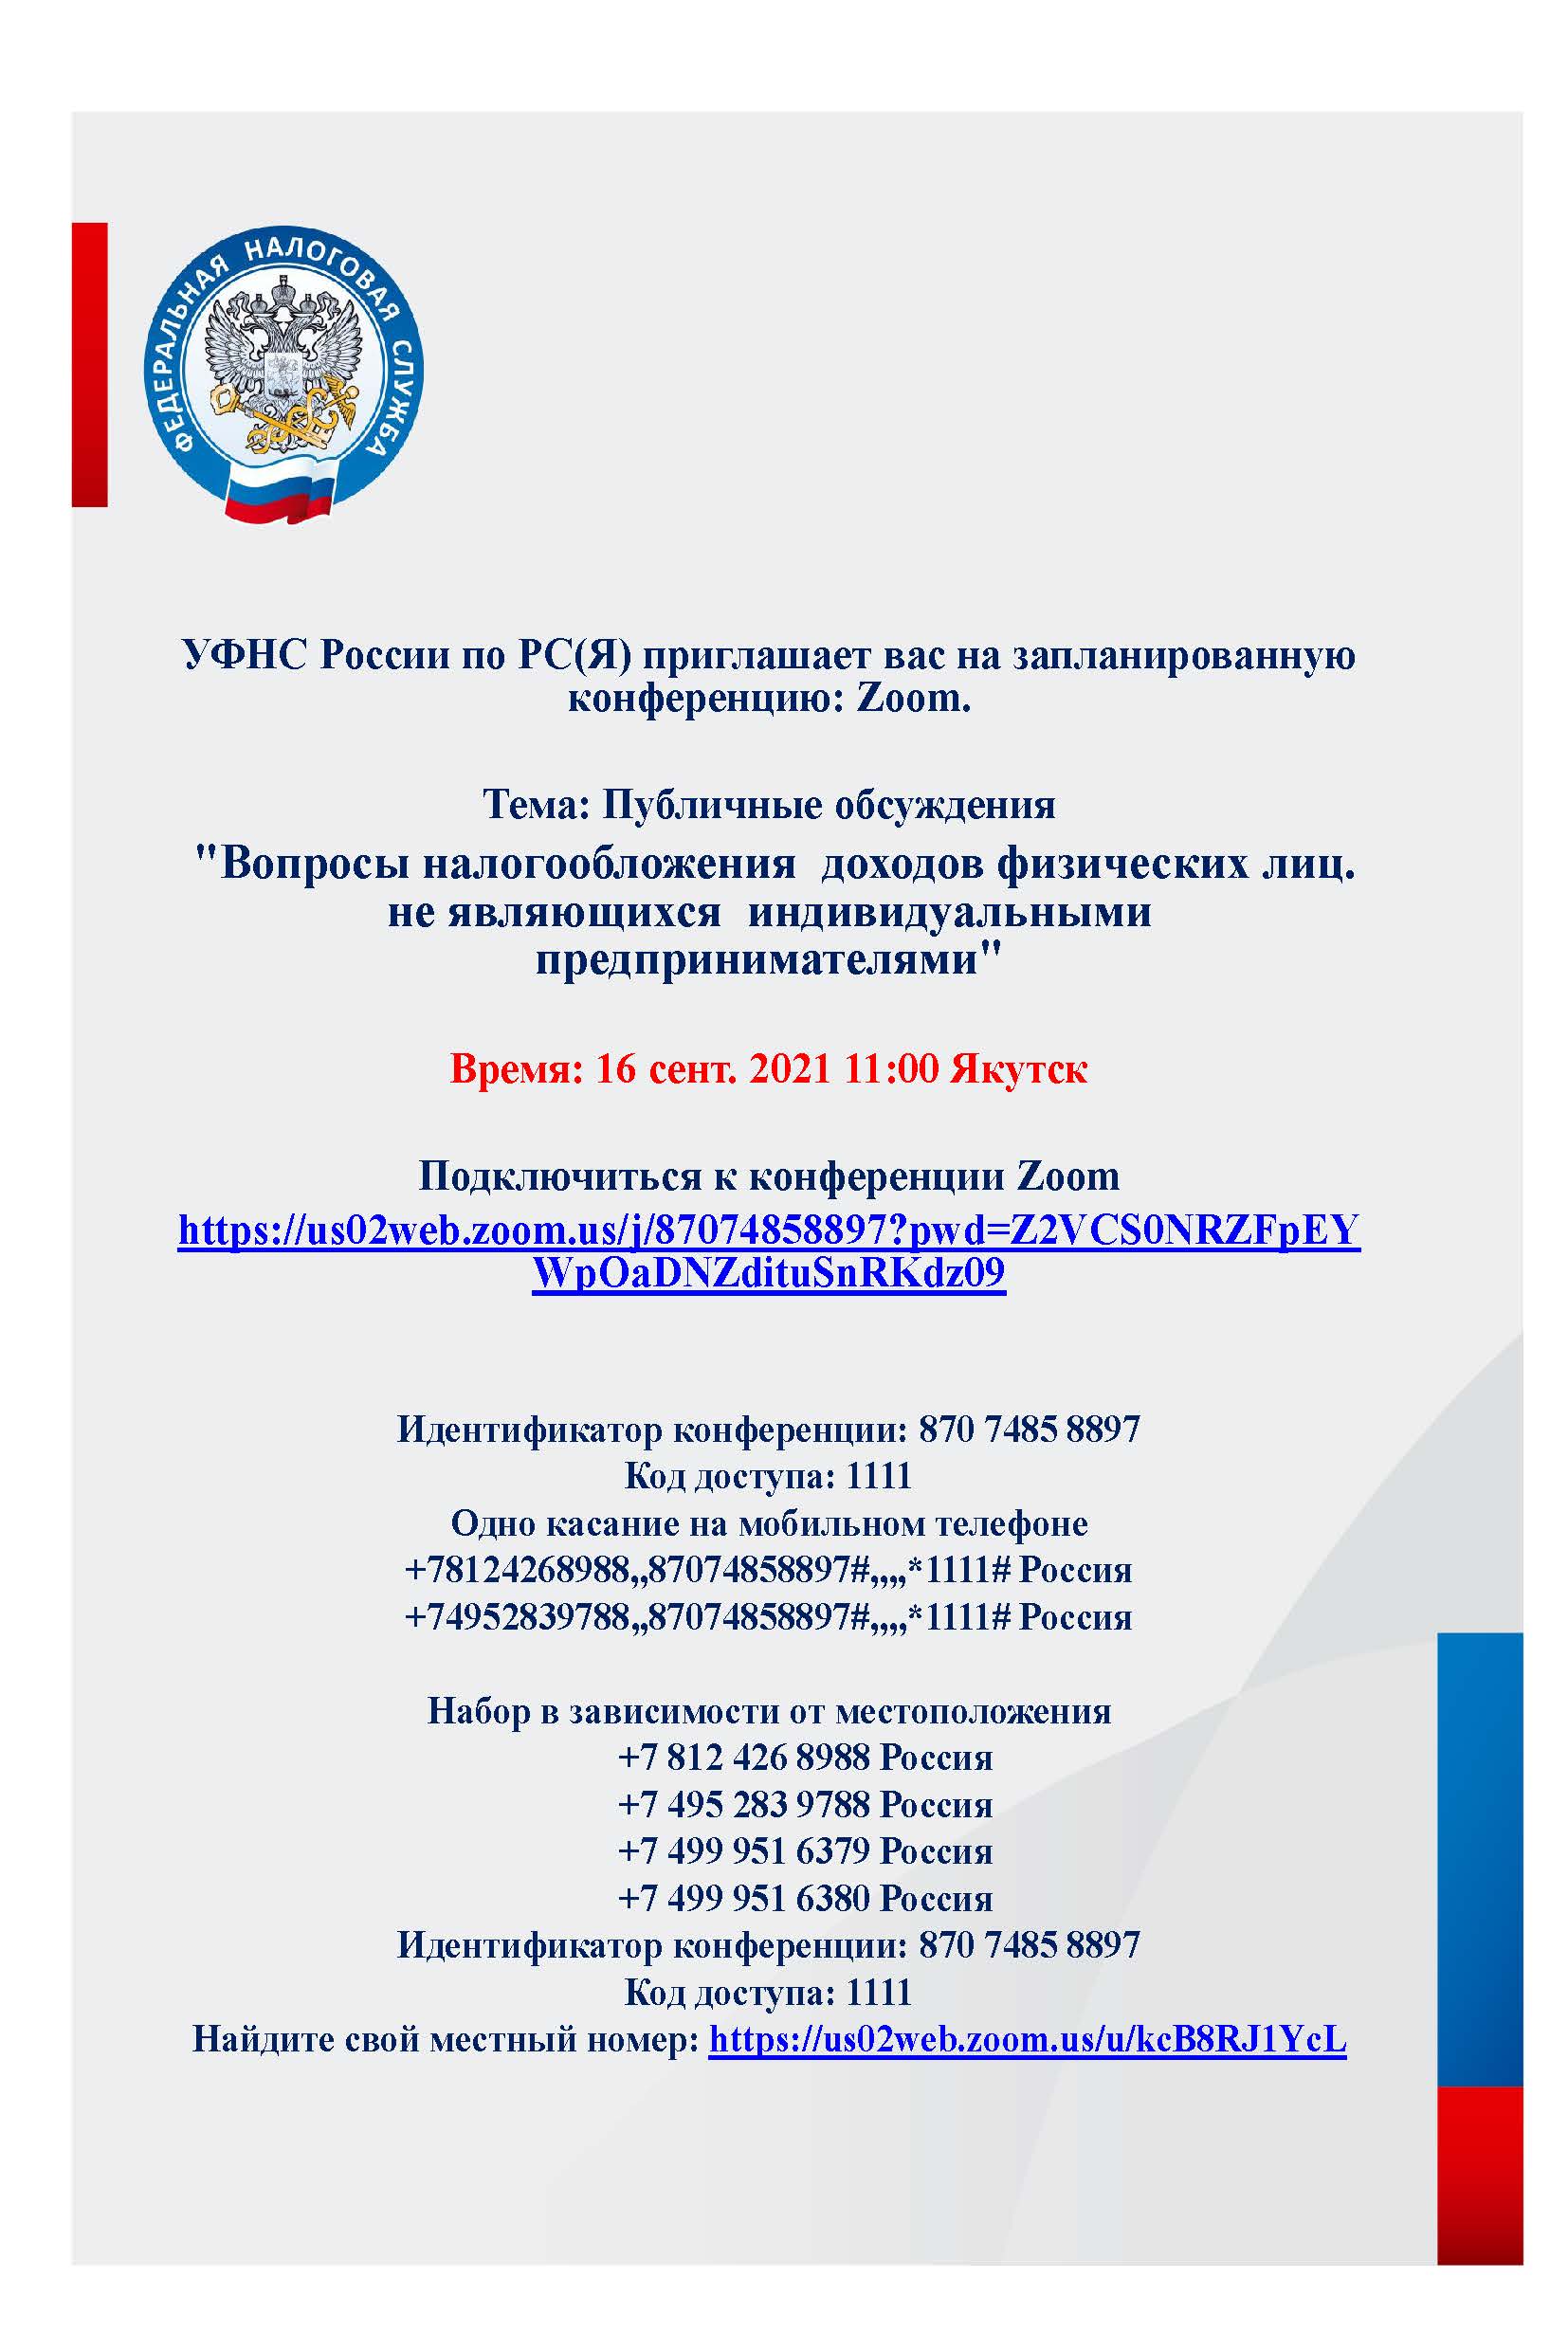 УФНС России по РС(Я) приглашает вас на запланированную конференцию